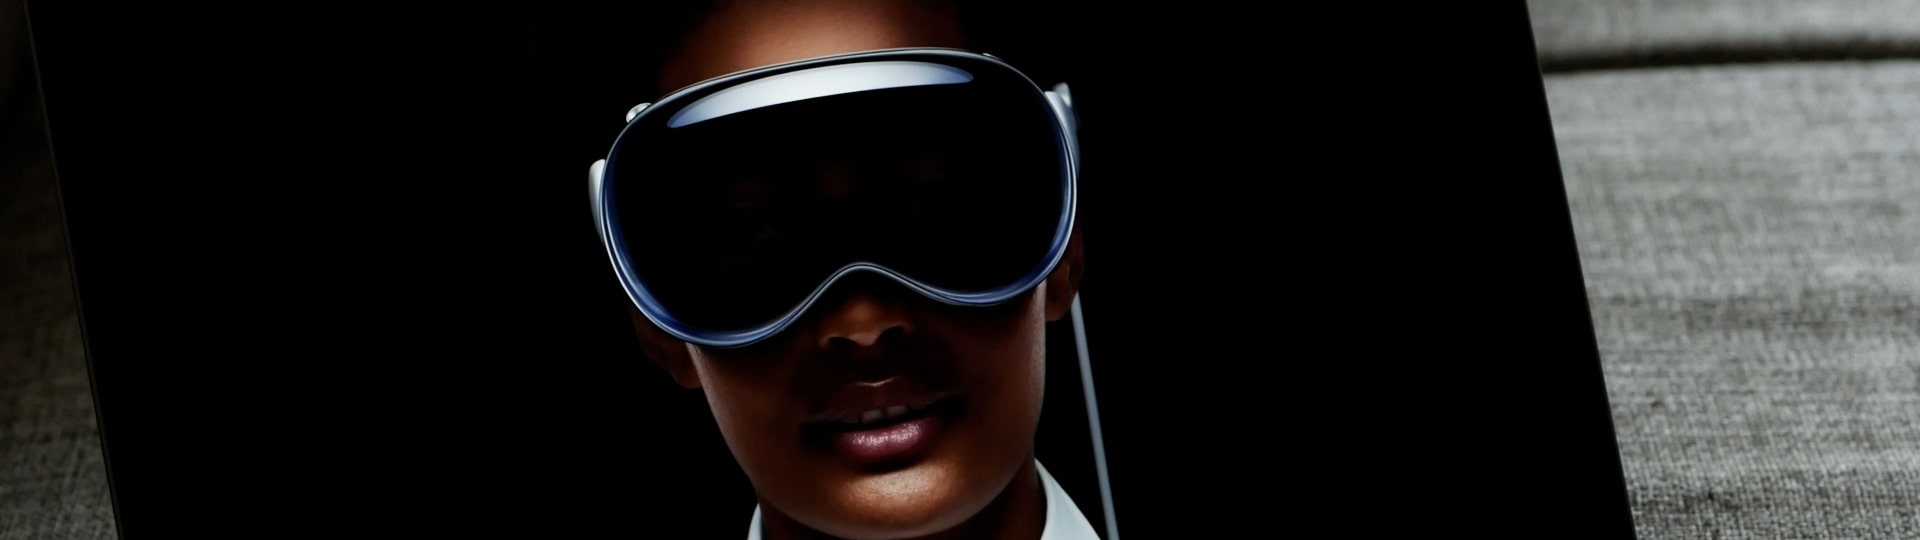 Apple uvedl na americký trh brýle pro rozšířenou i virtuální realitu